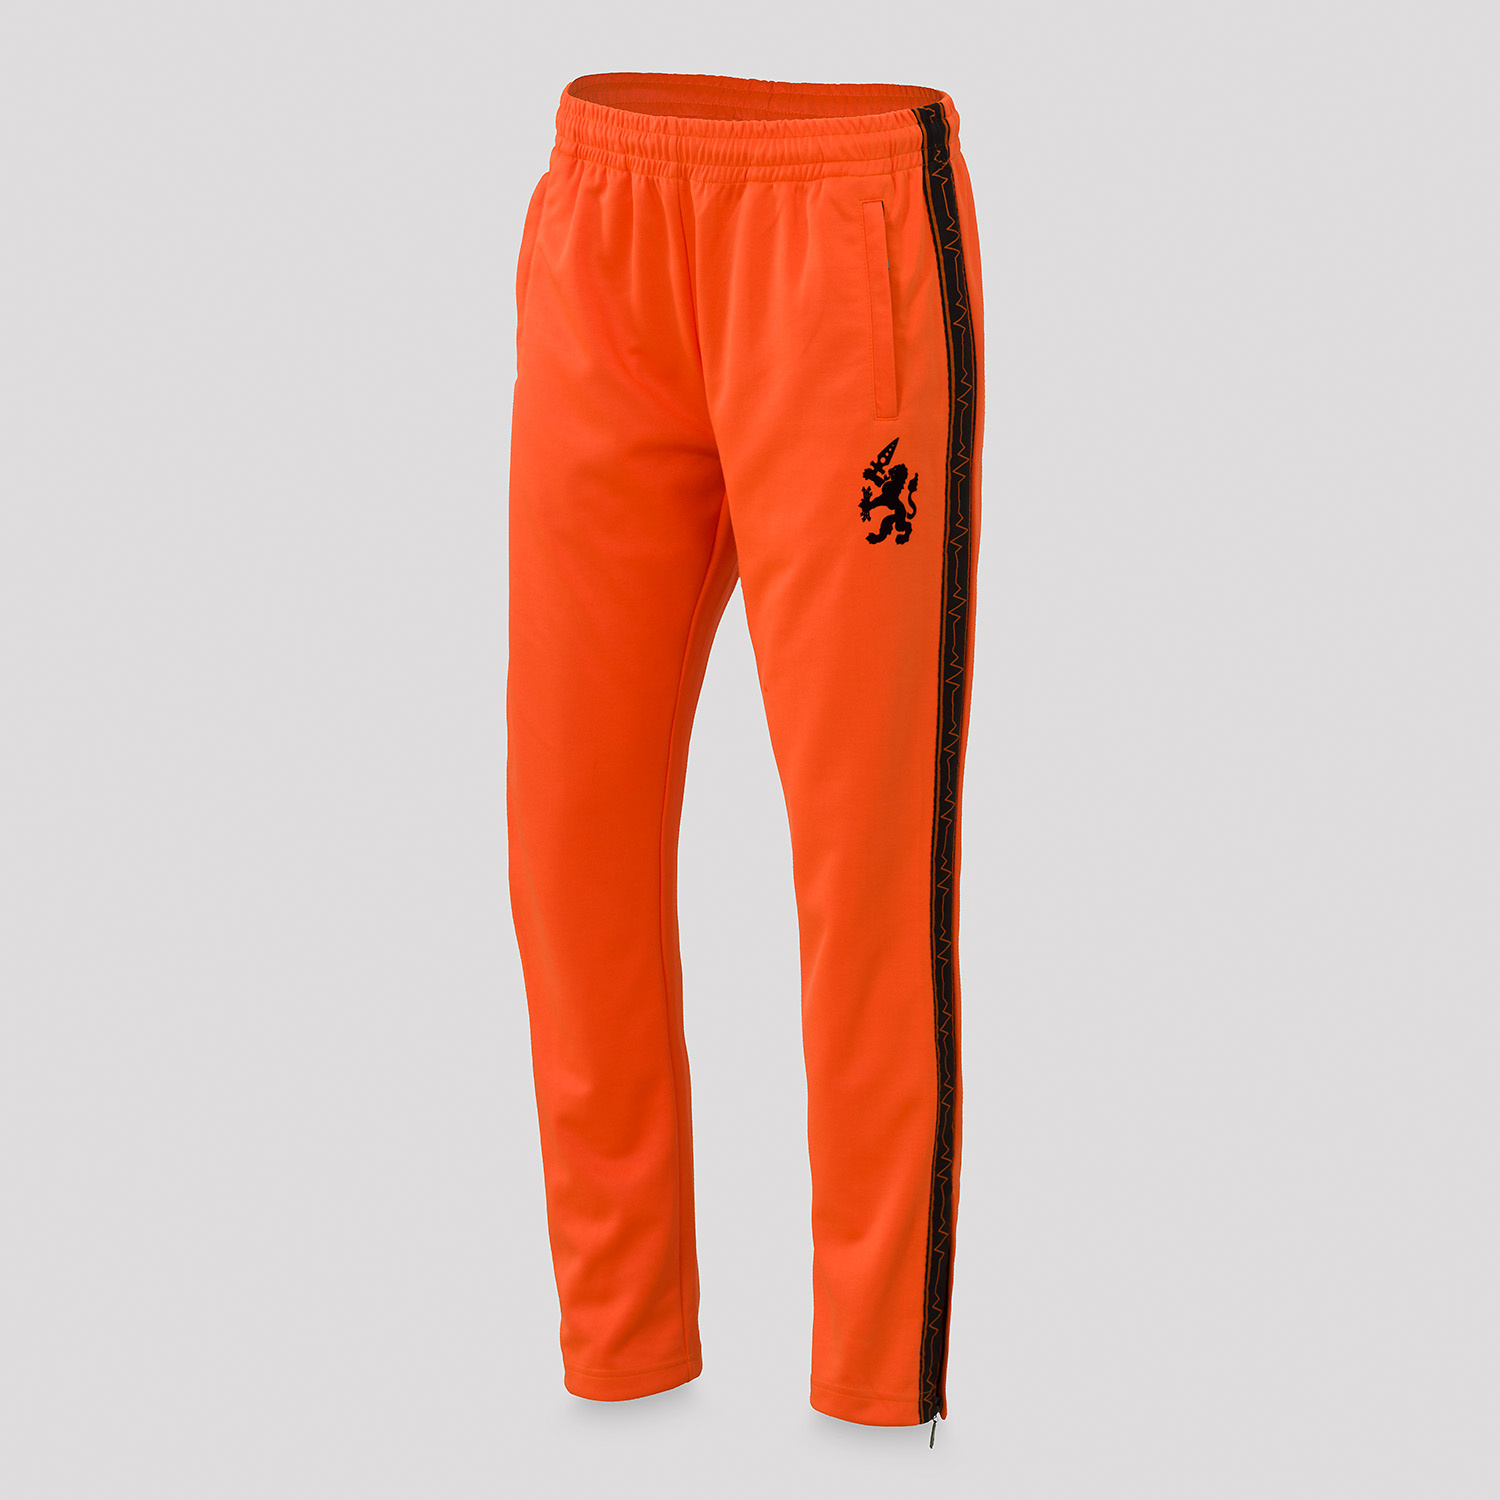 Buy Gag Mens Orange Sports Polyester Track Pant Large at Amazonin